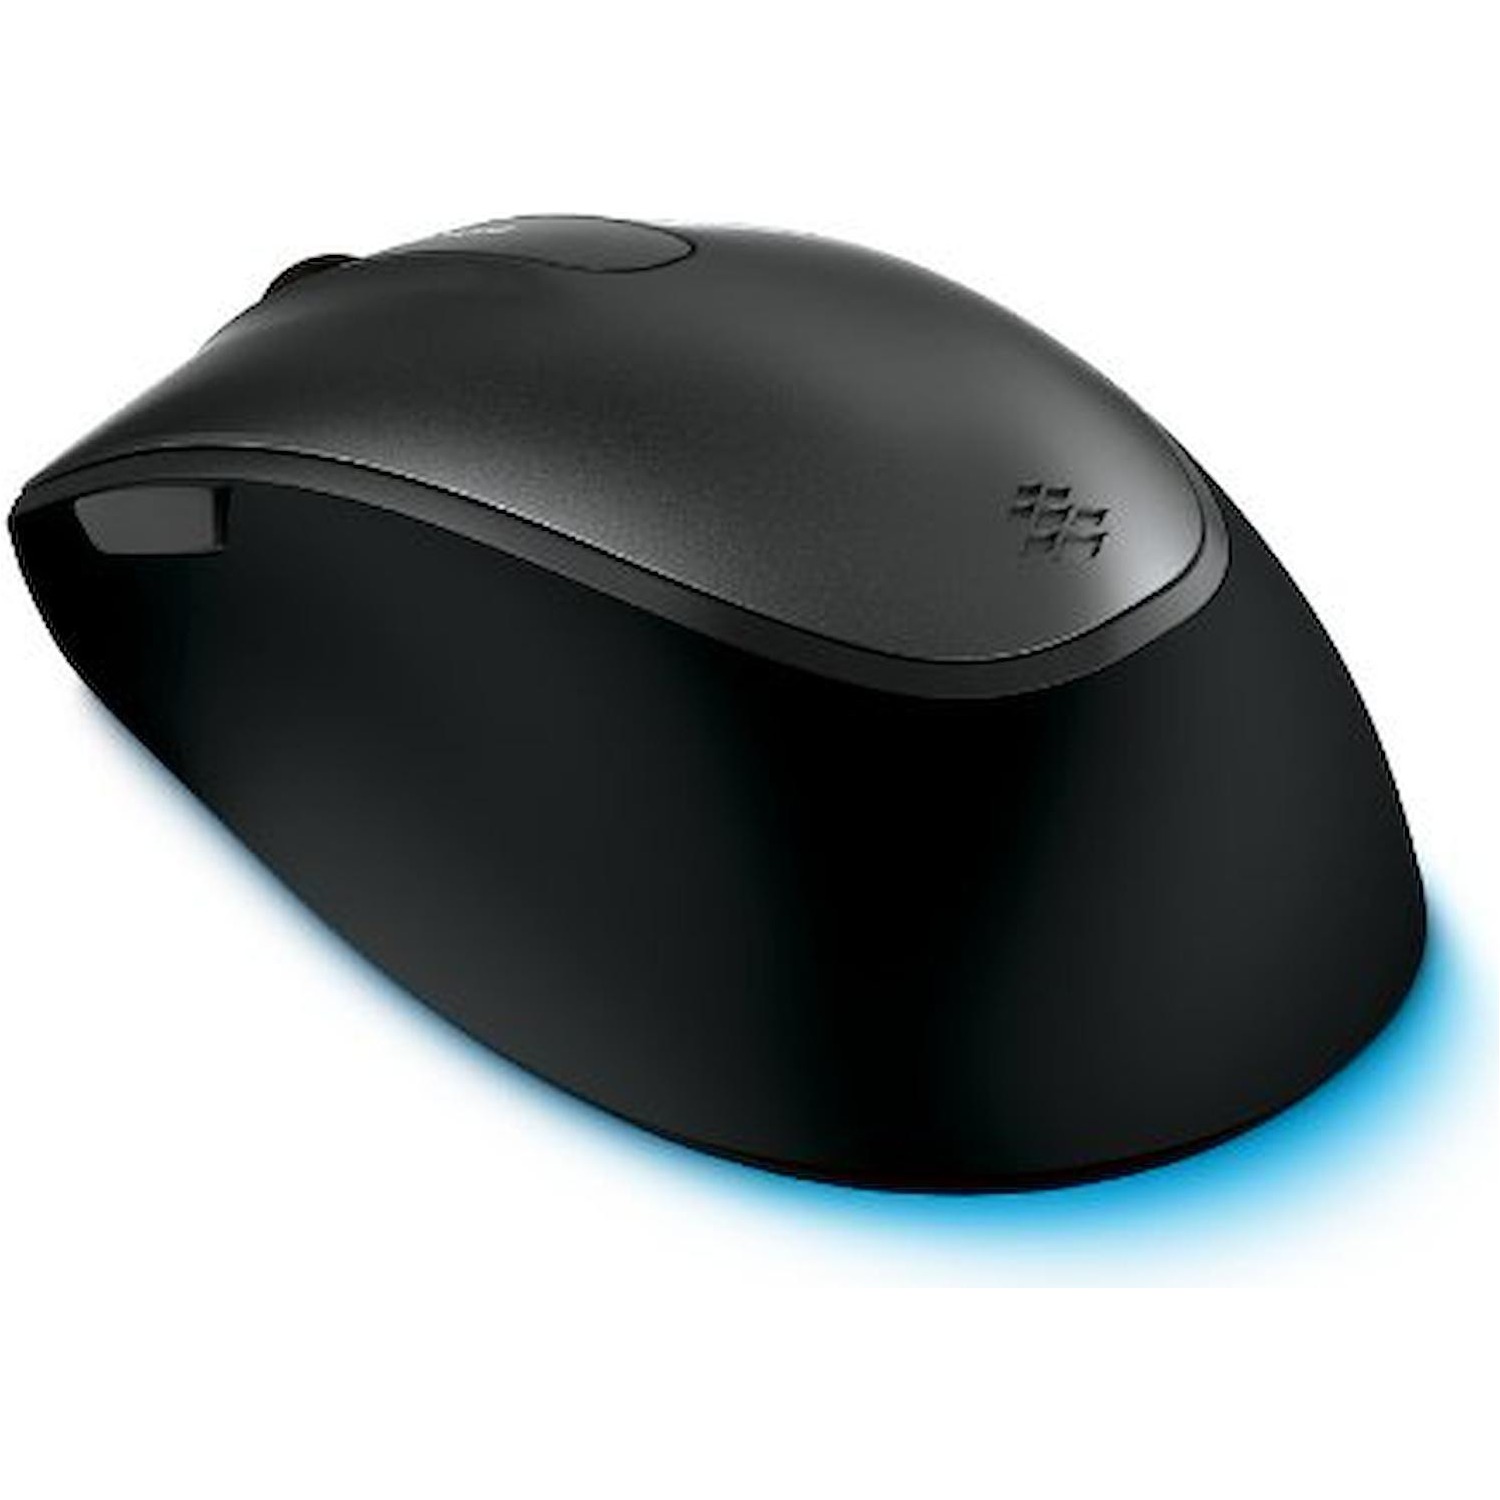 Immagine per Mouse Microsoft ottico con filo Confort 4500      grigio nero da DIMOStore